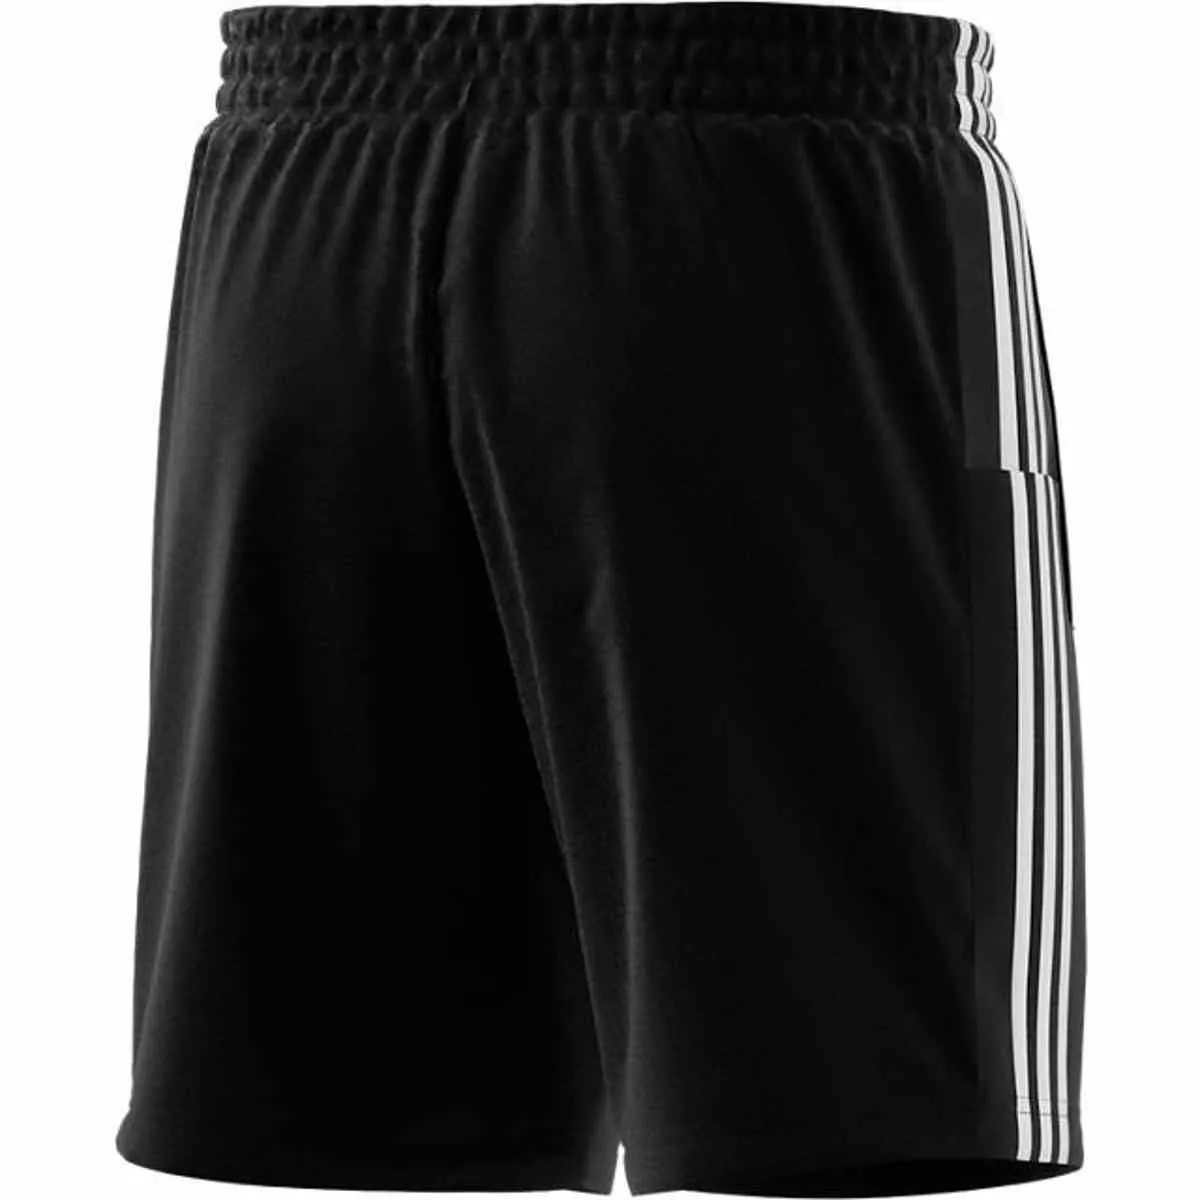 adidas Trainings Shorts Chelsea, schwarz, weiß